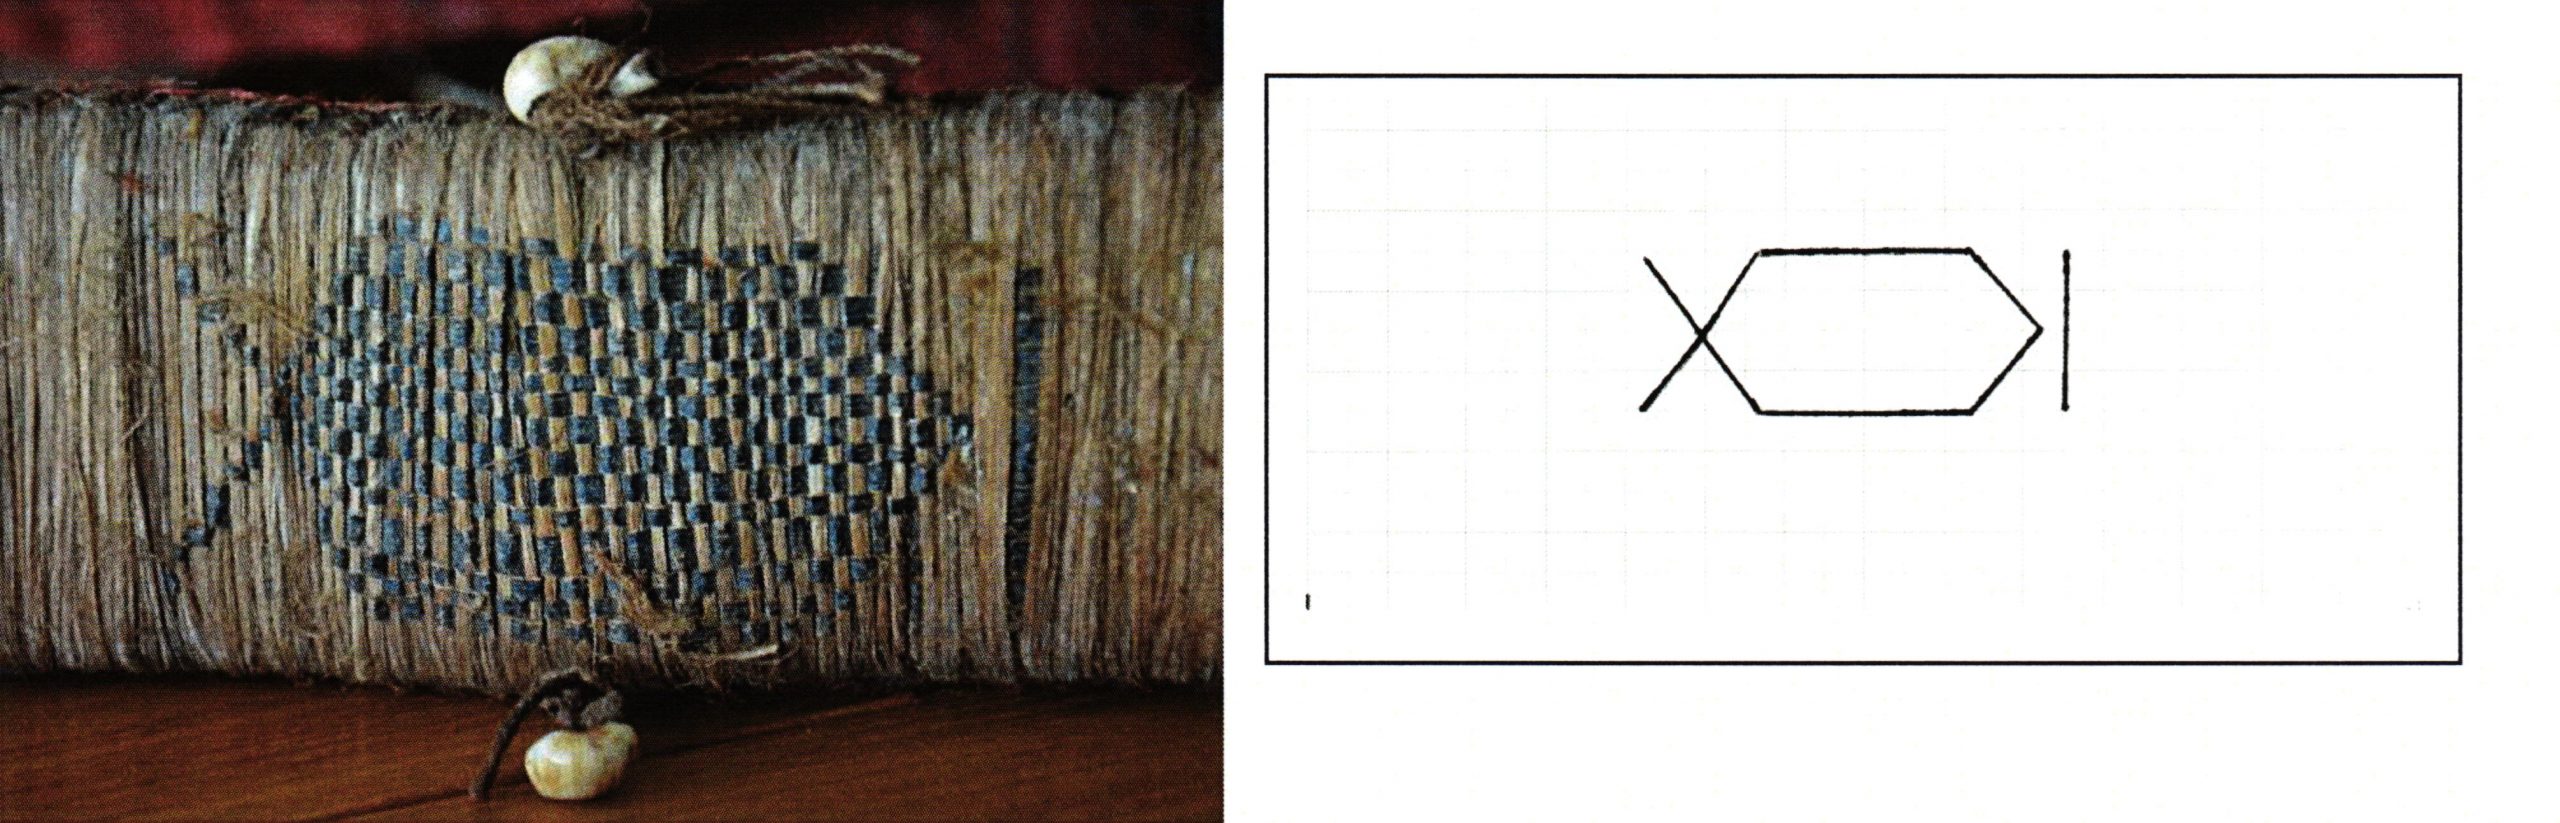 PGS 36,2 (2015) Tafel 42 Abb. 24: Federgeldrolle [EUNA 2]. Handwerkermarke langes Sechseck mit beidseitigen Zeichen